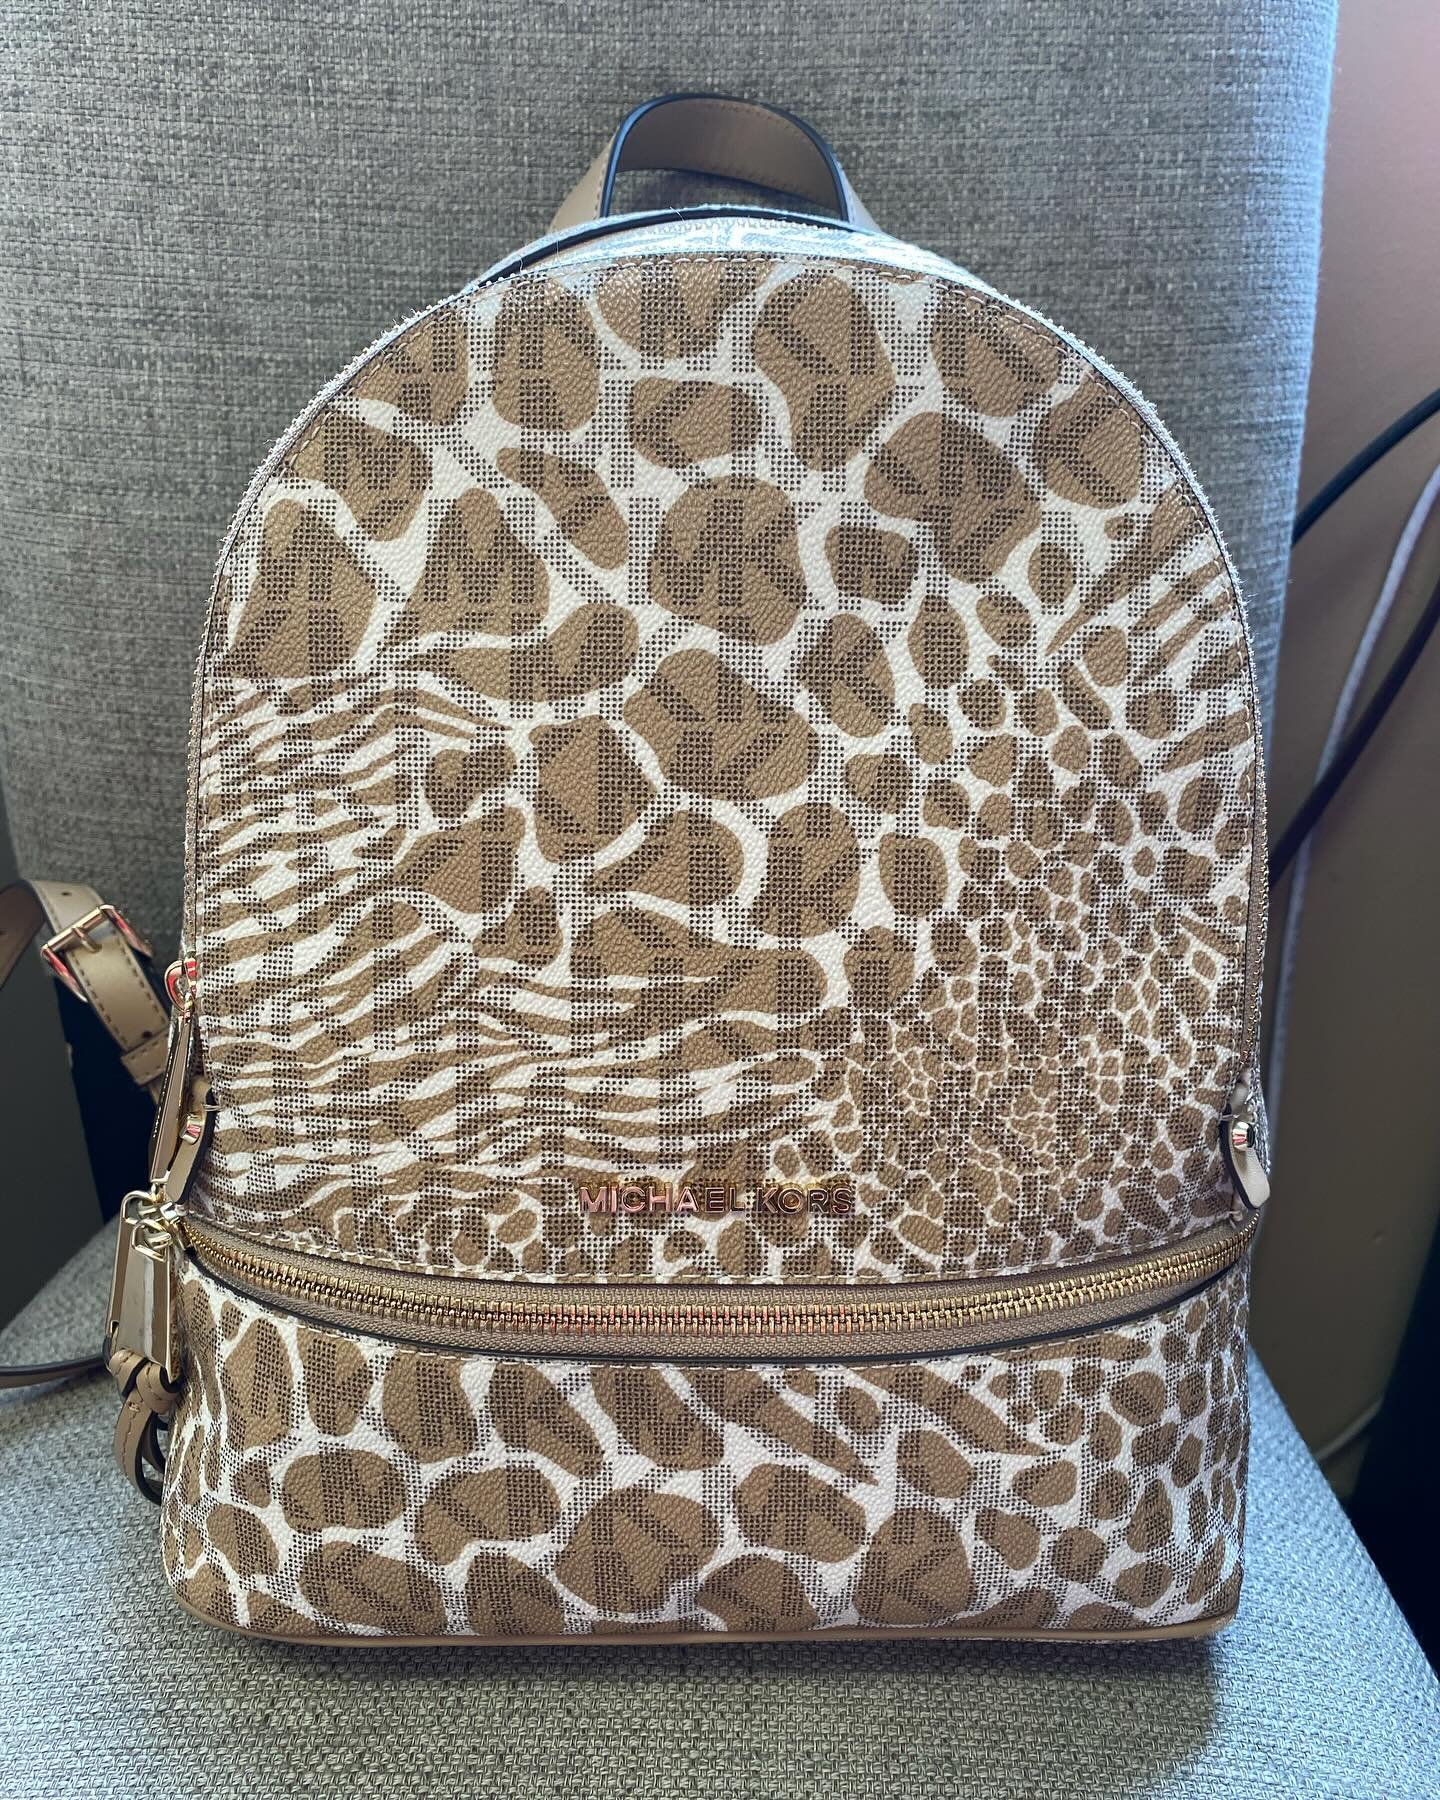 MK backpack $89.95! 🔥🔥🔥